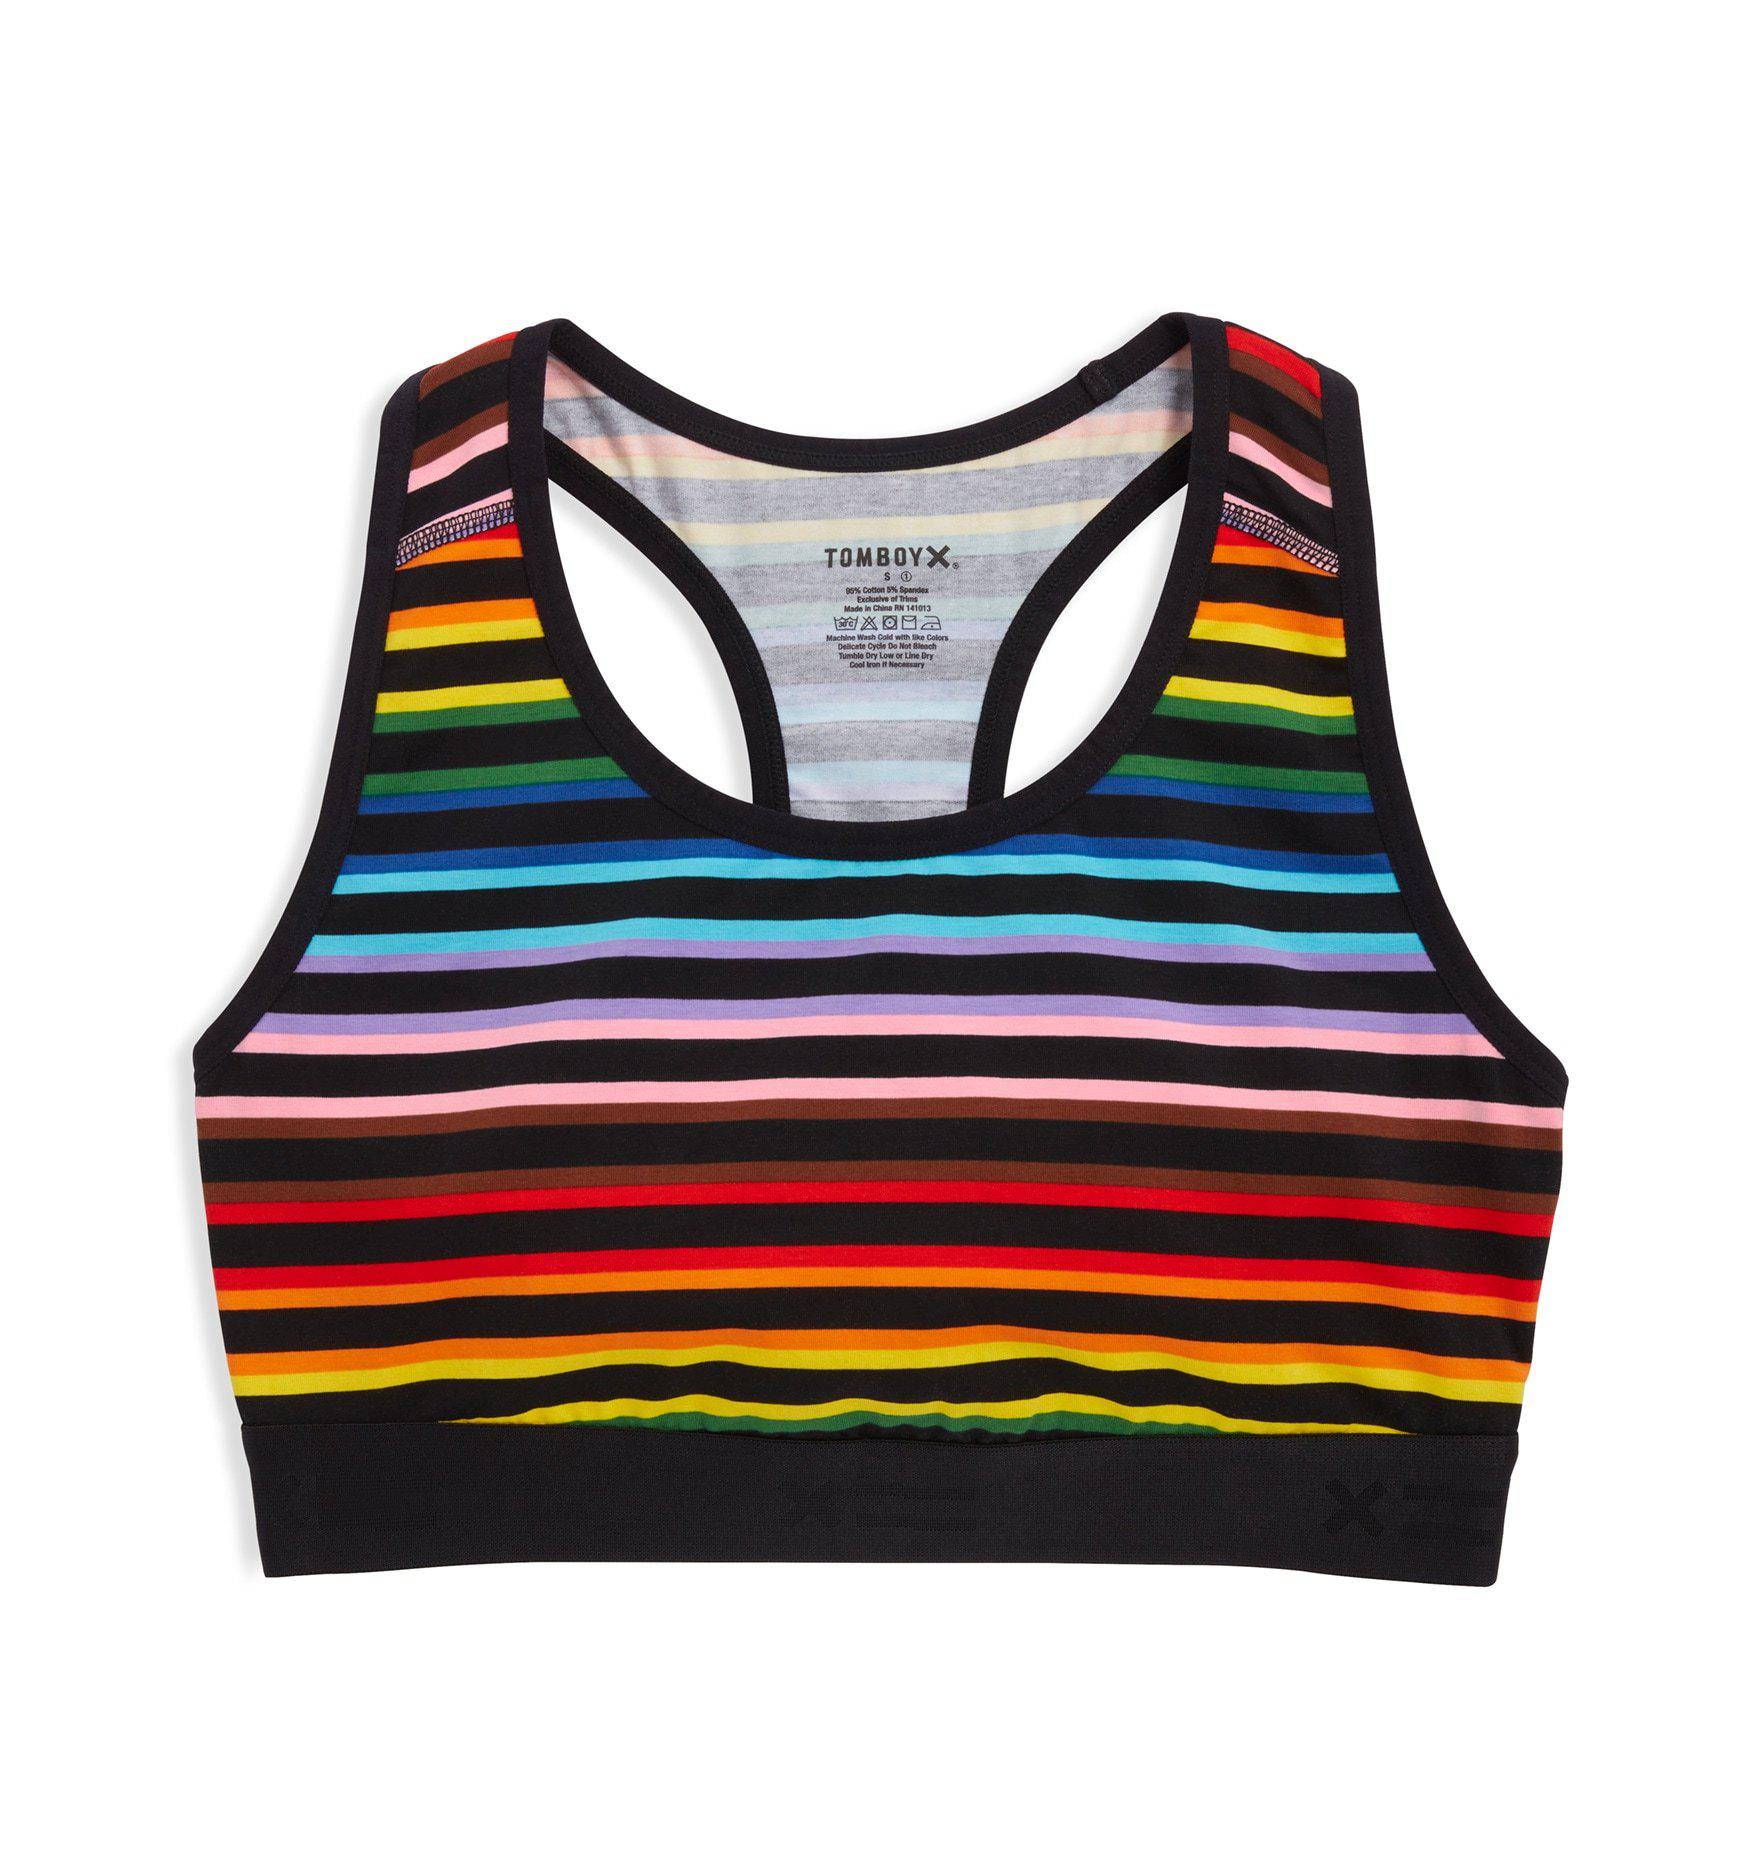 TomboyX, Intimates & Sleepwear, Tomboy X Racerback Soft Bra Rainbow Pride  Stripes Size 2x